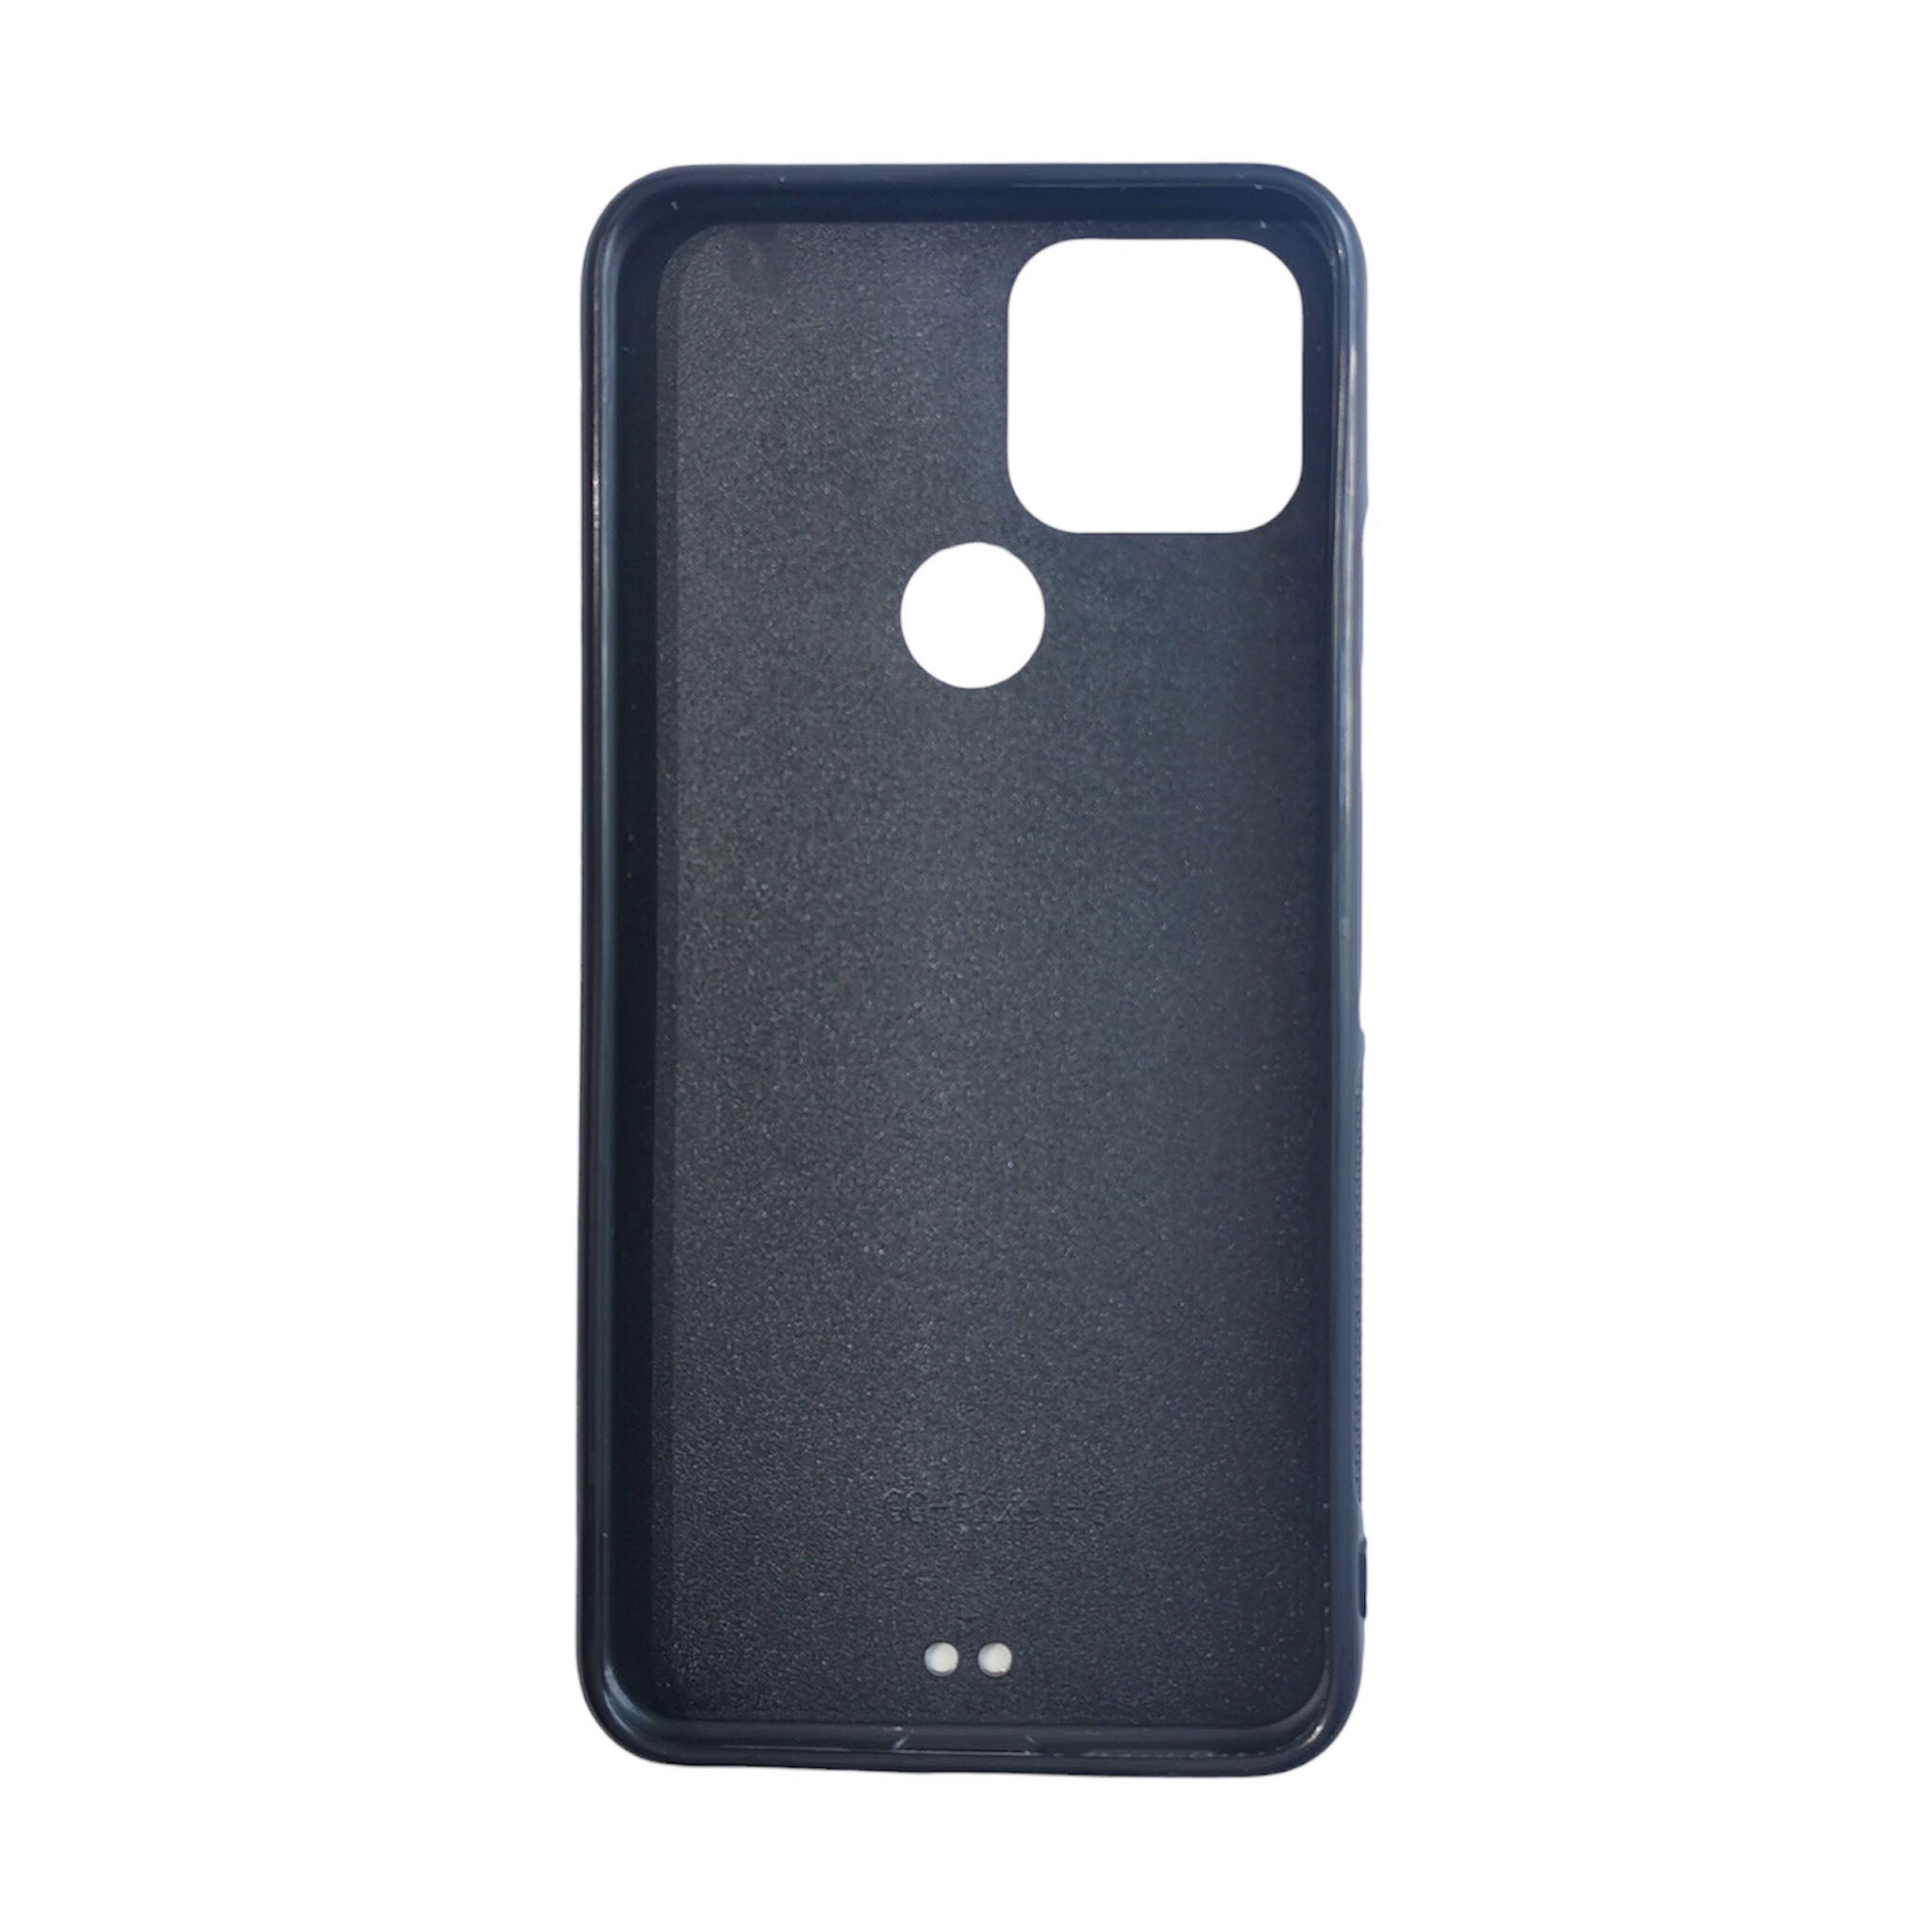 Google Pixel 5 - Black TPU Rubber Sublimation Phone Case